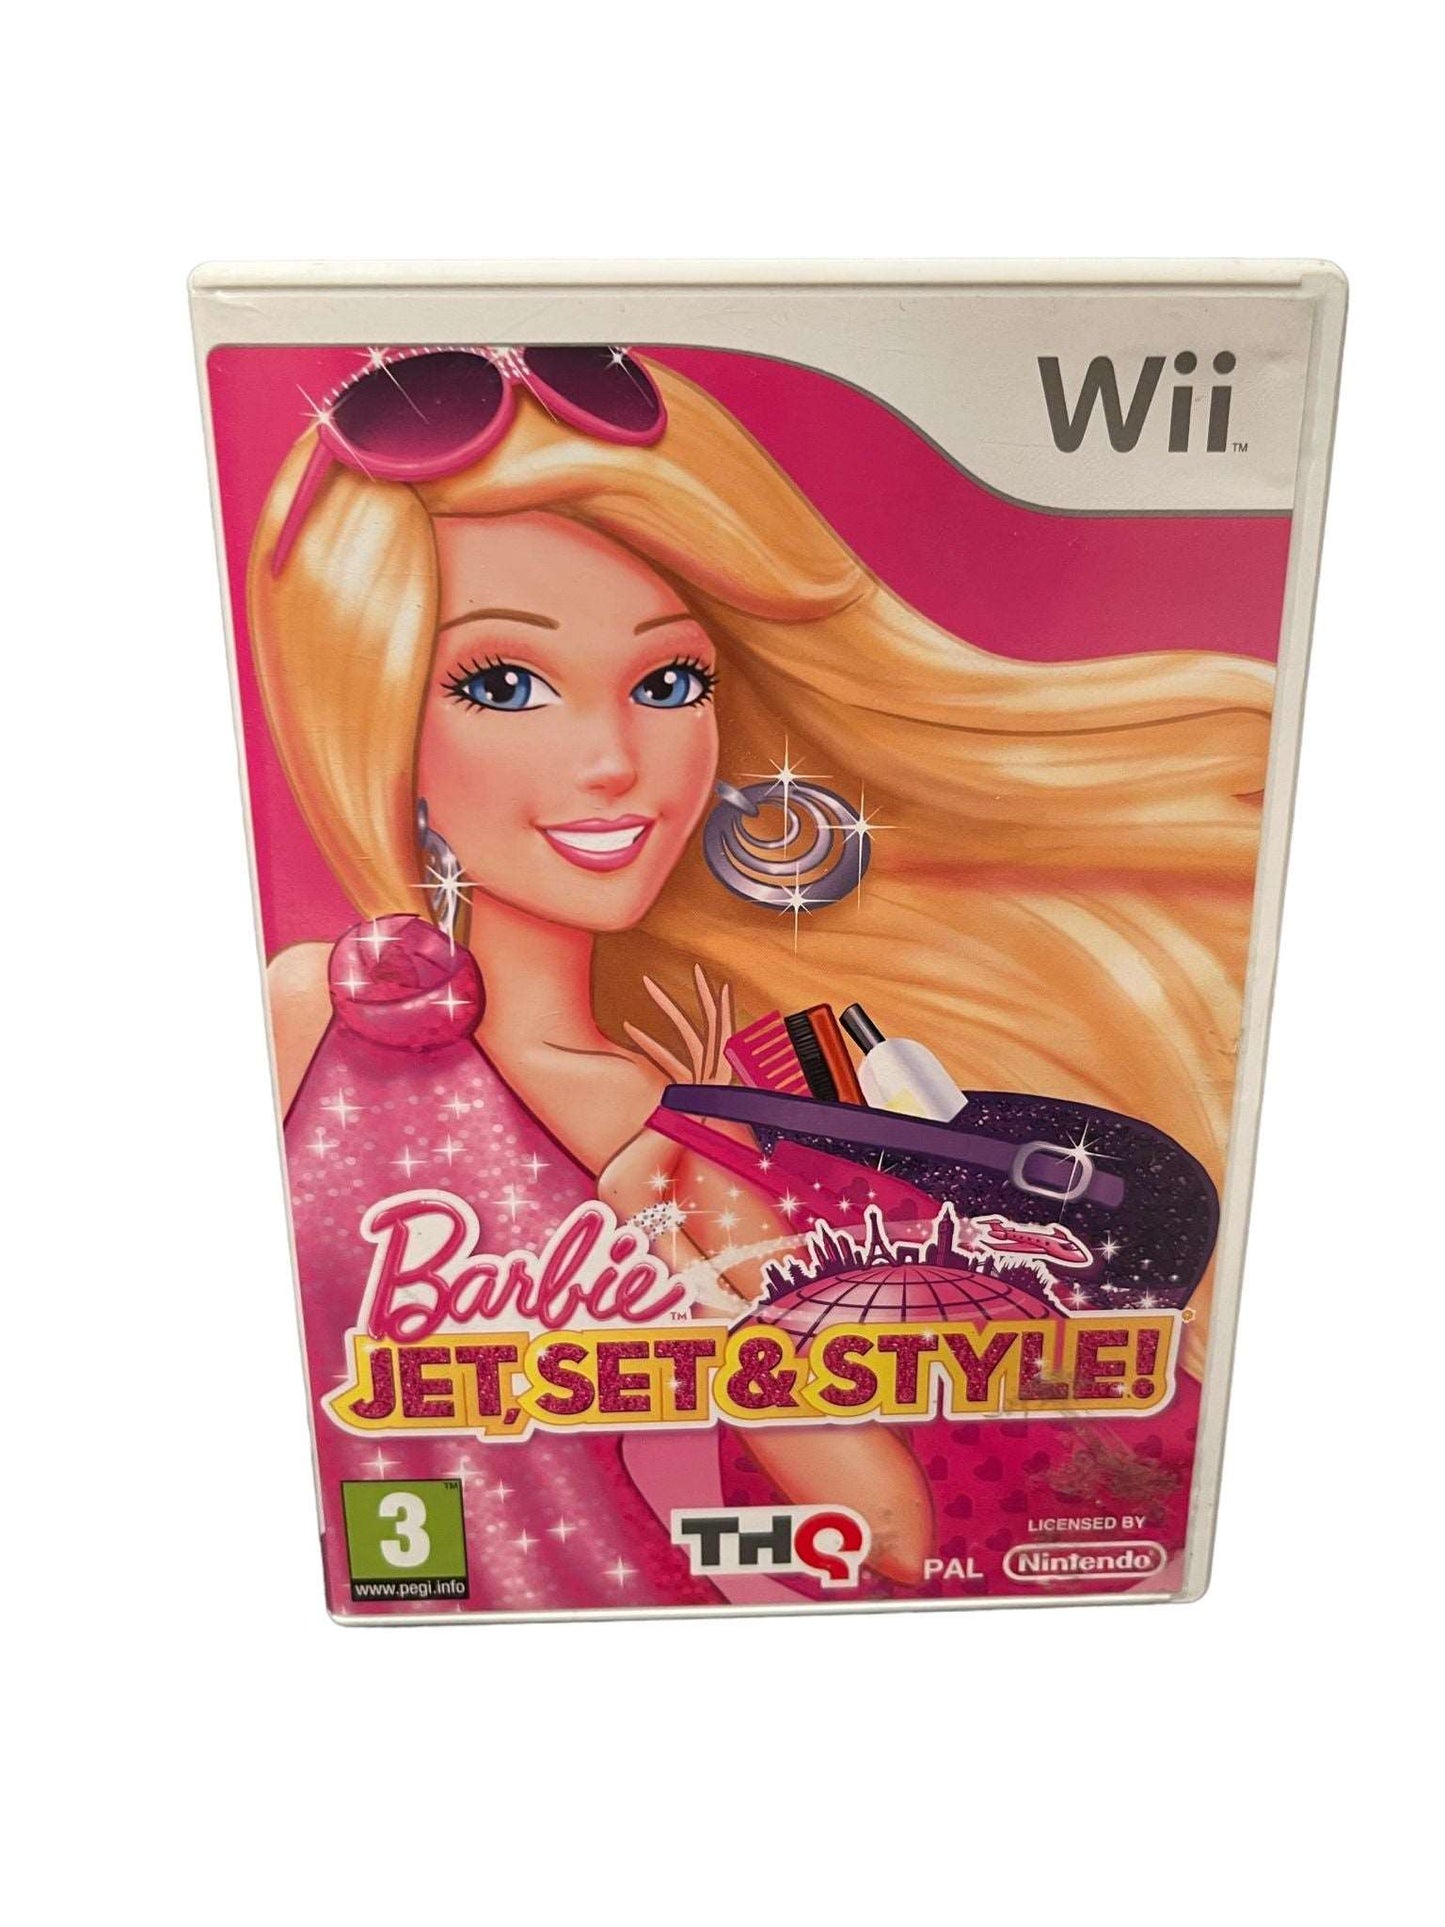 Barbie Jet, Set & Style! - Wii